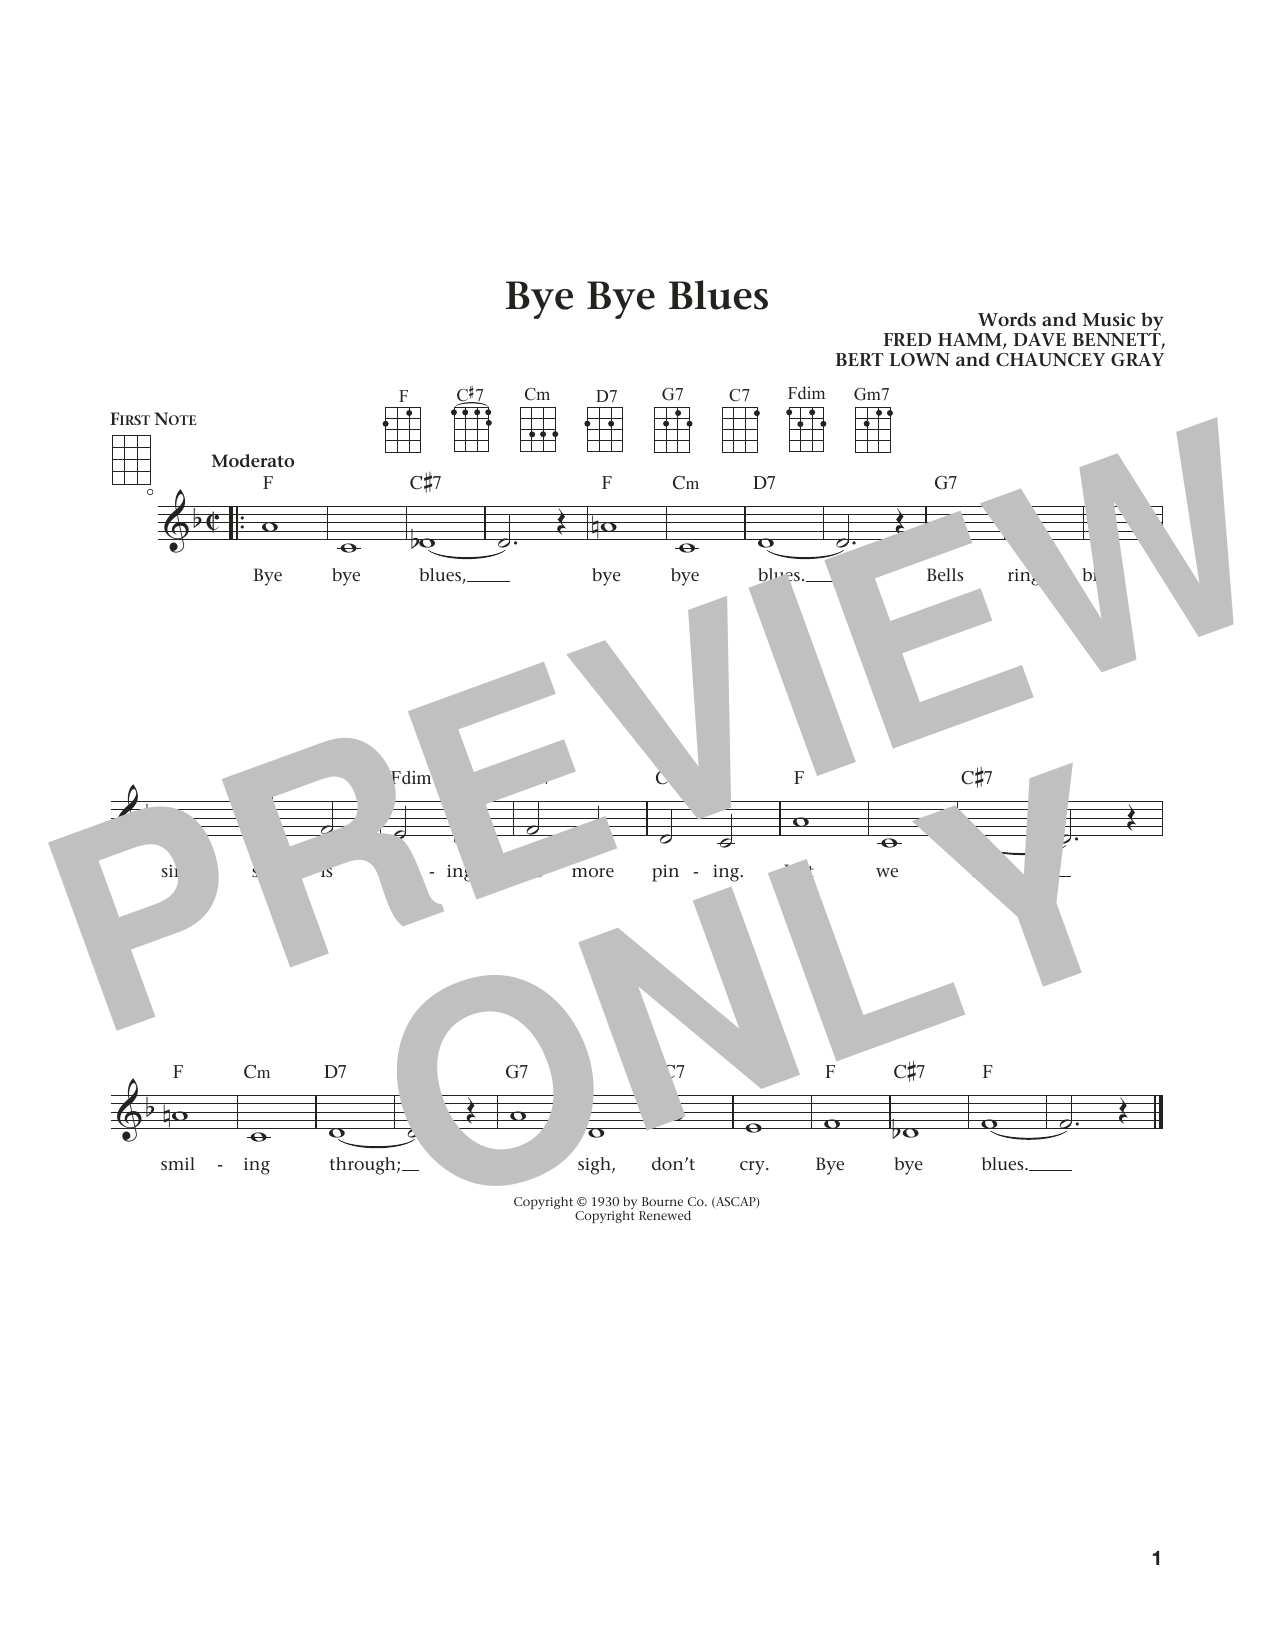 Download Bert Kaempfert Bye Bye Blues (from The Daily Ukulele) Sheet Music